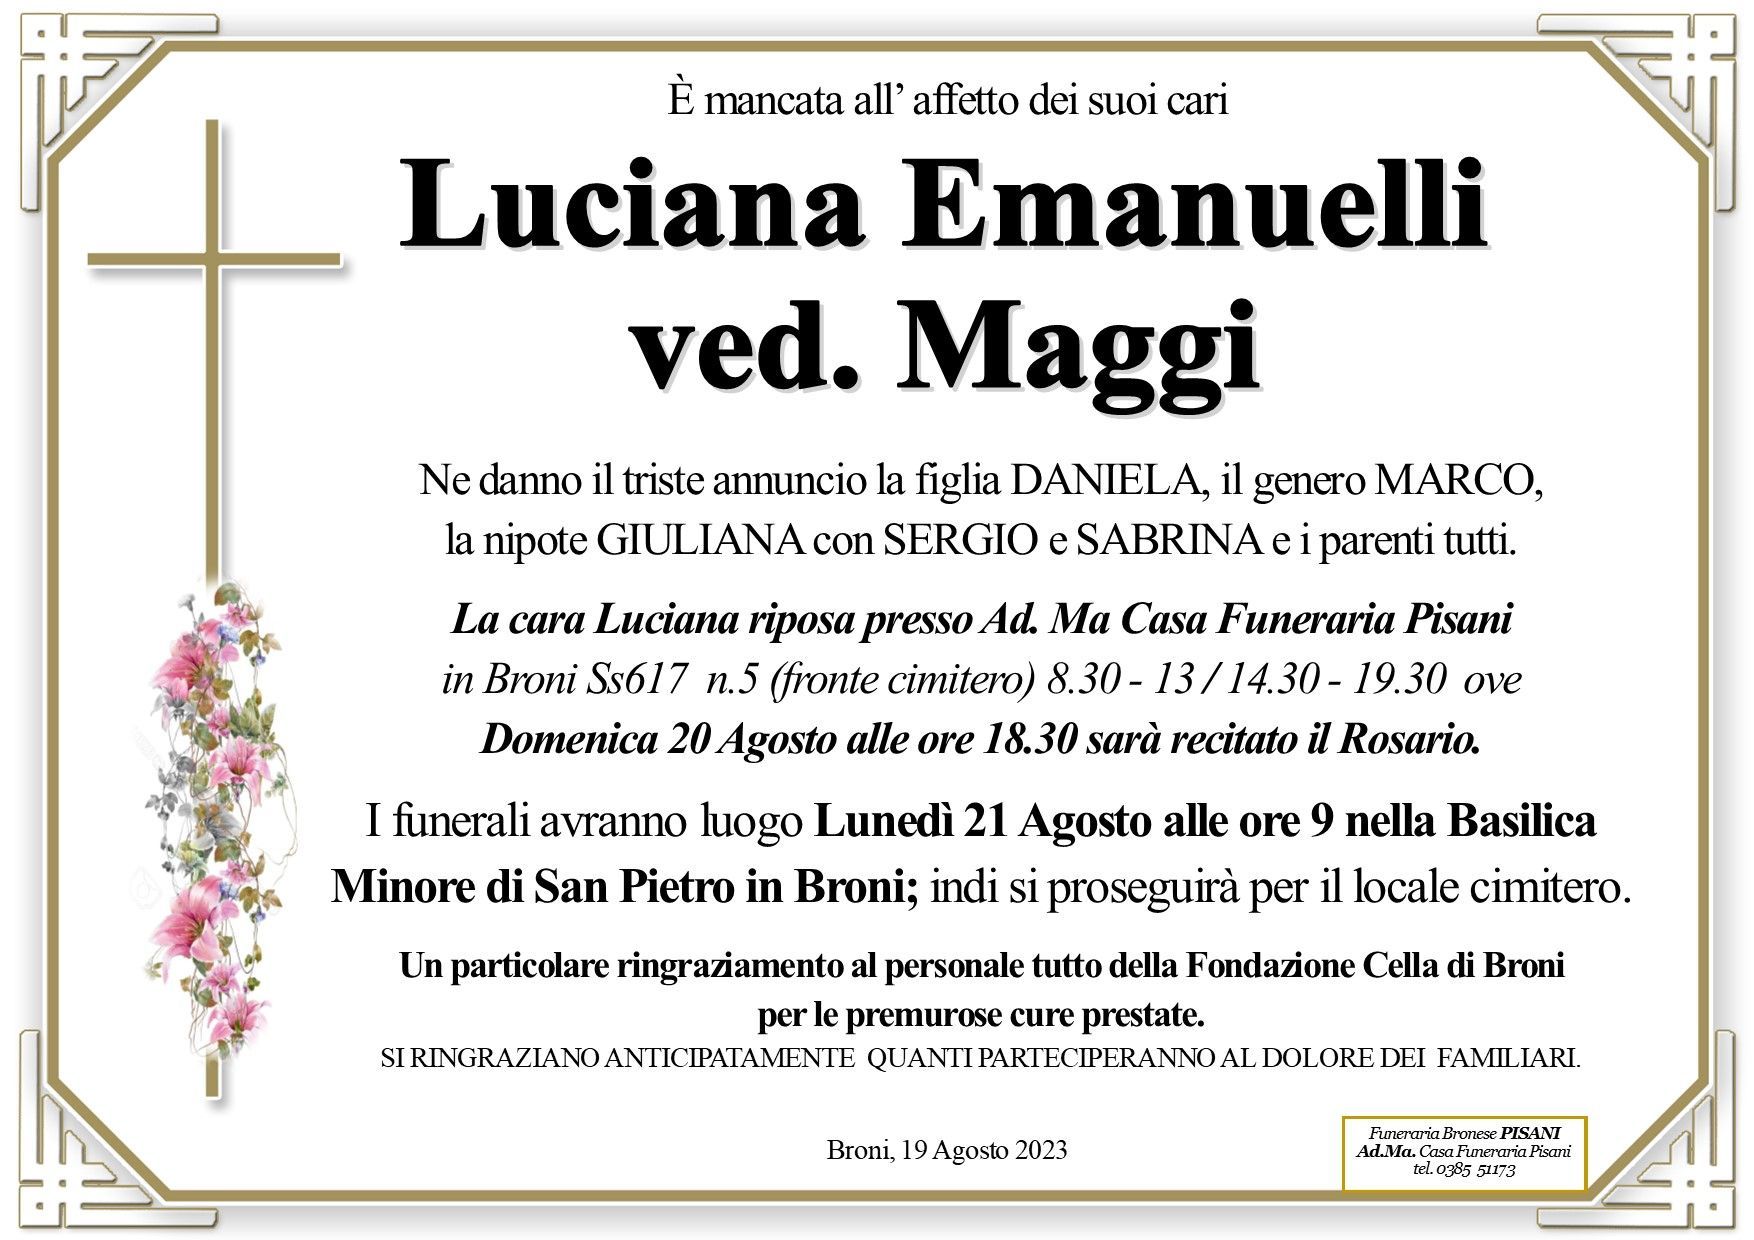 necrologio Luciana Emanuelli ved. Maggi